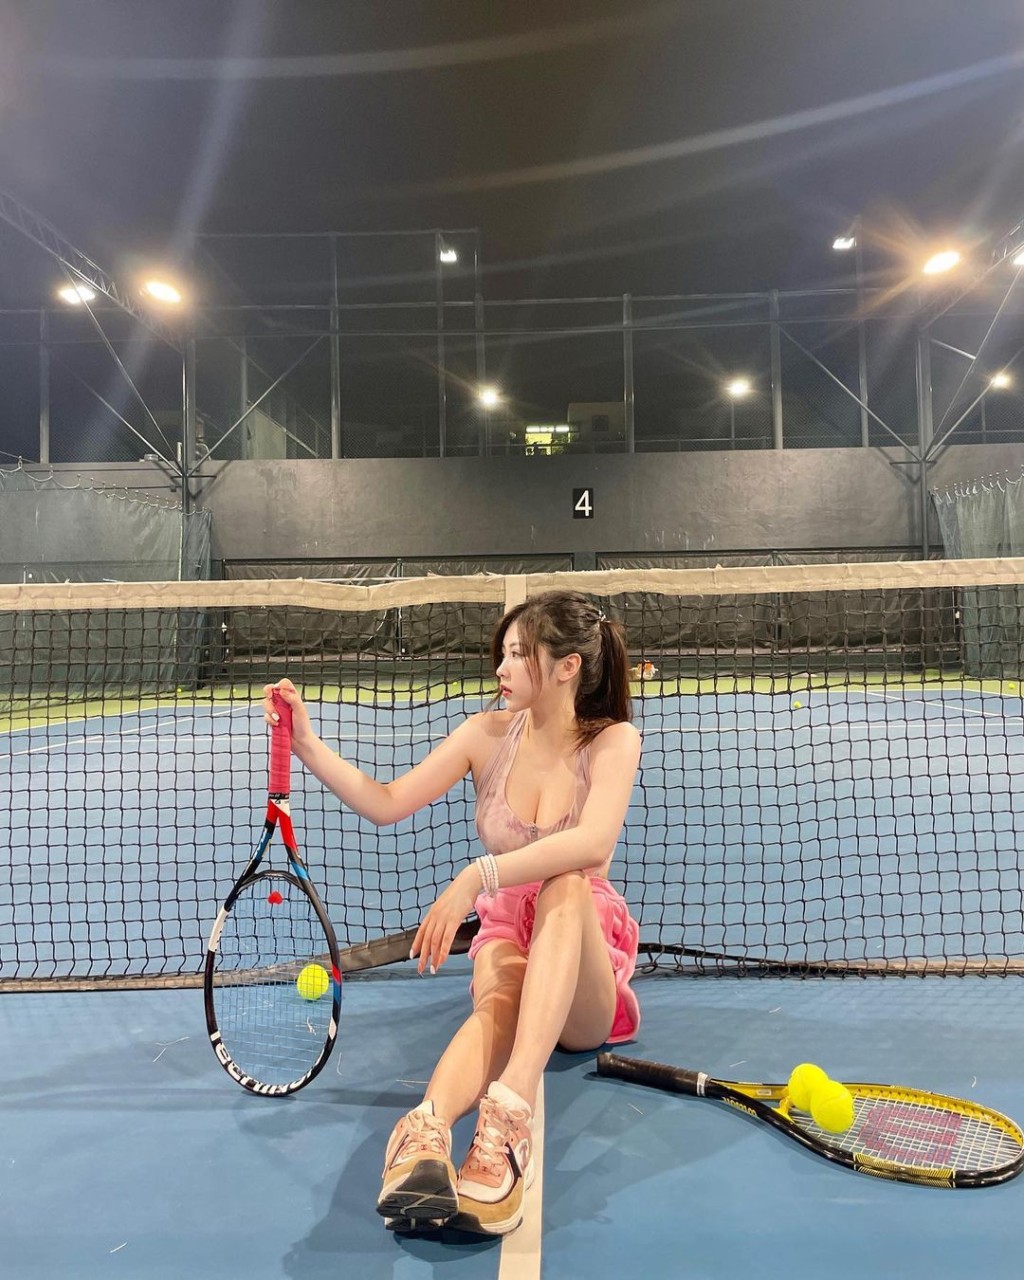 连打网球做运动亦要性感上阵。